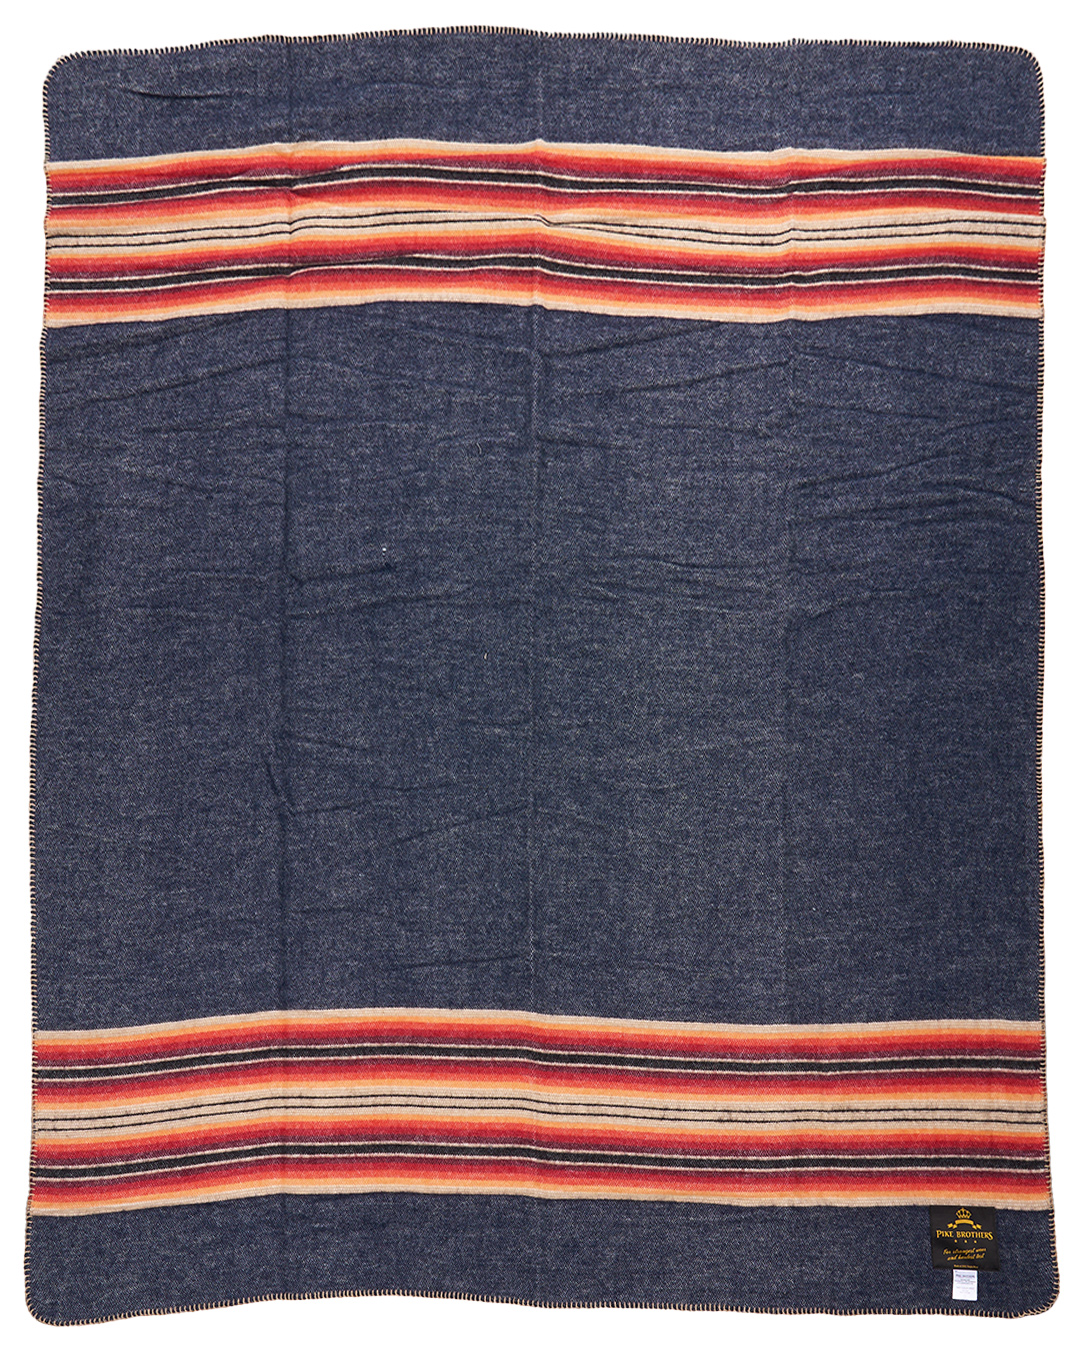 1969 Denakatee wool blanket navy